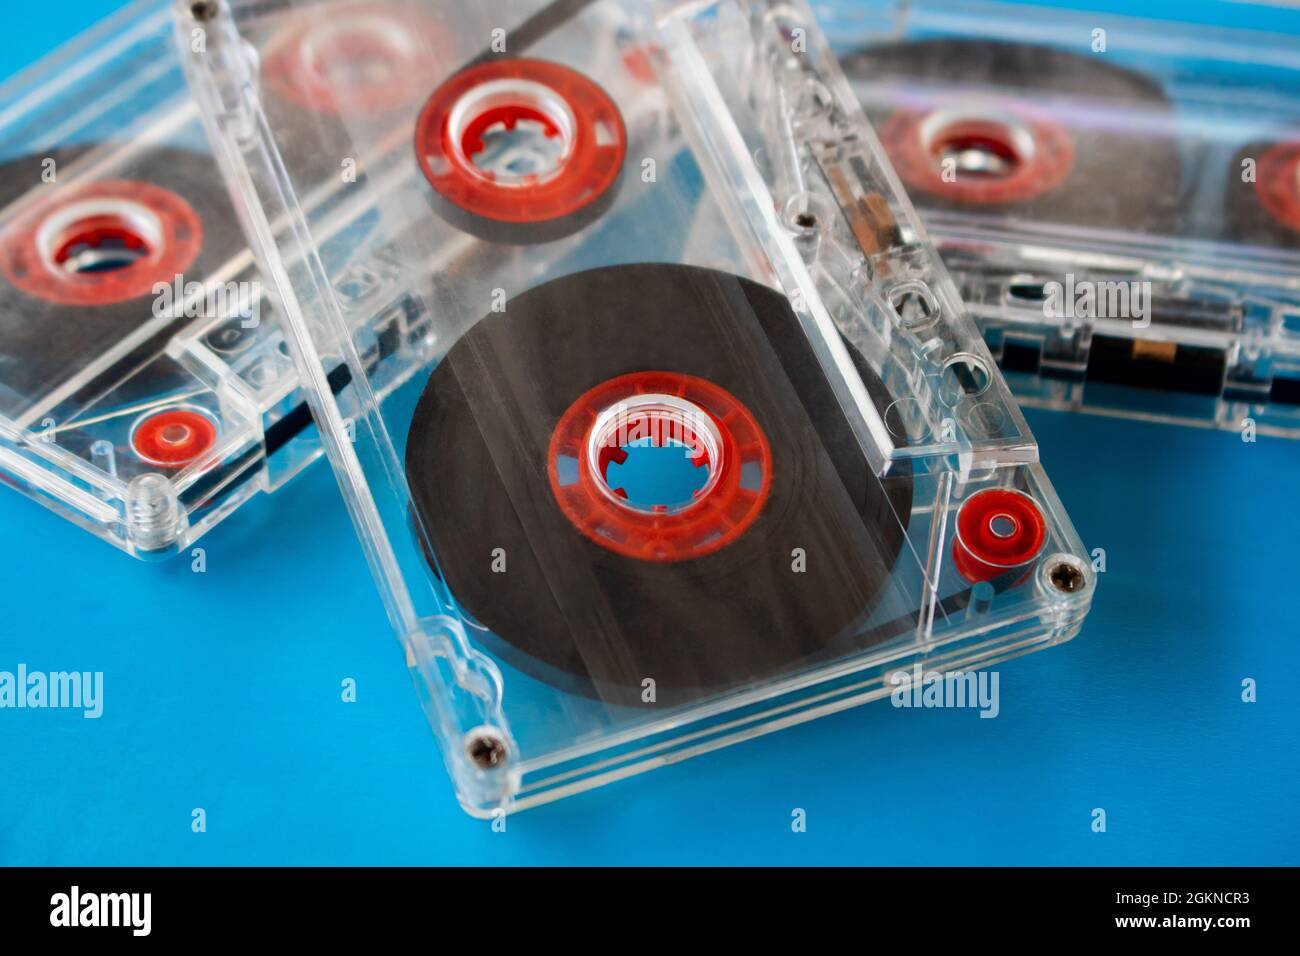 Plusieurs cassettes audio compactes transparentes avec bande visible et rouleaux internes rouges placés aléatoirement sur un fond bleu. Technique de mise au point sélective Banque D'Images